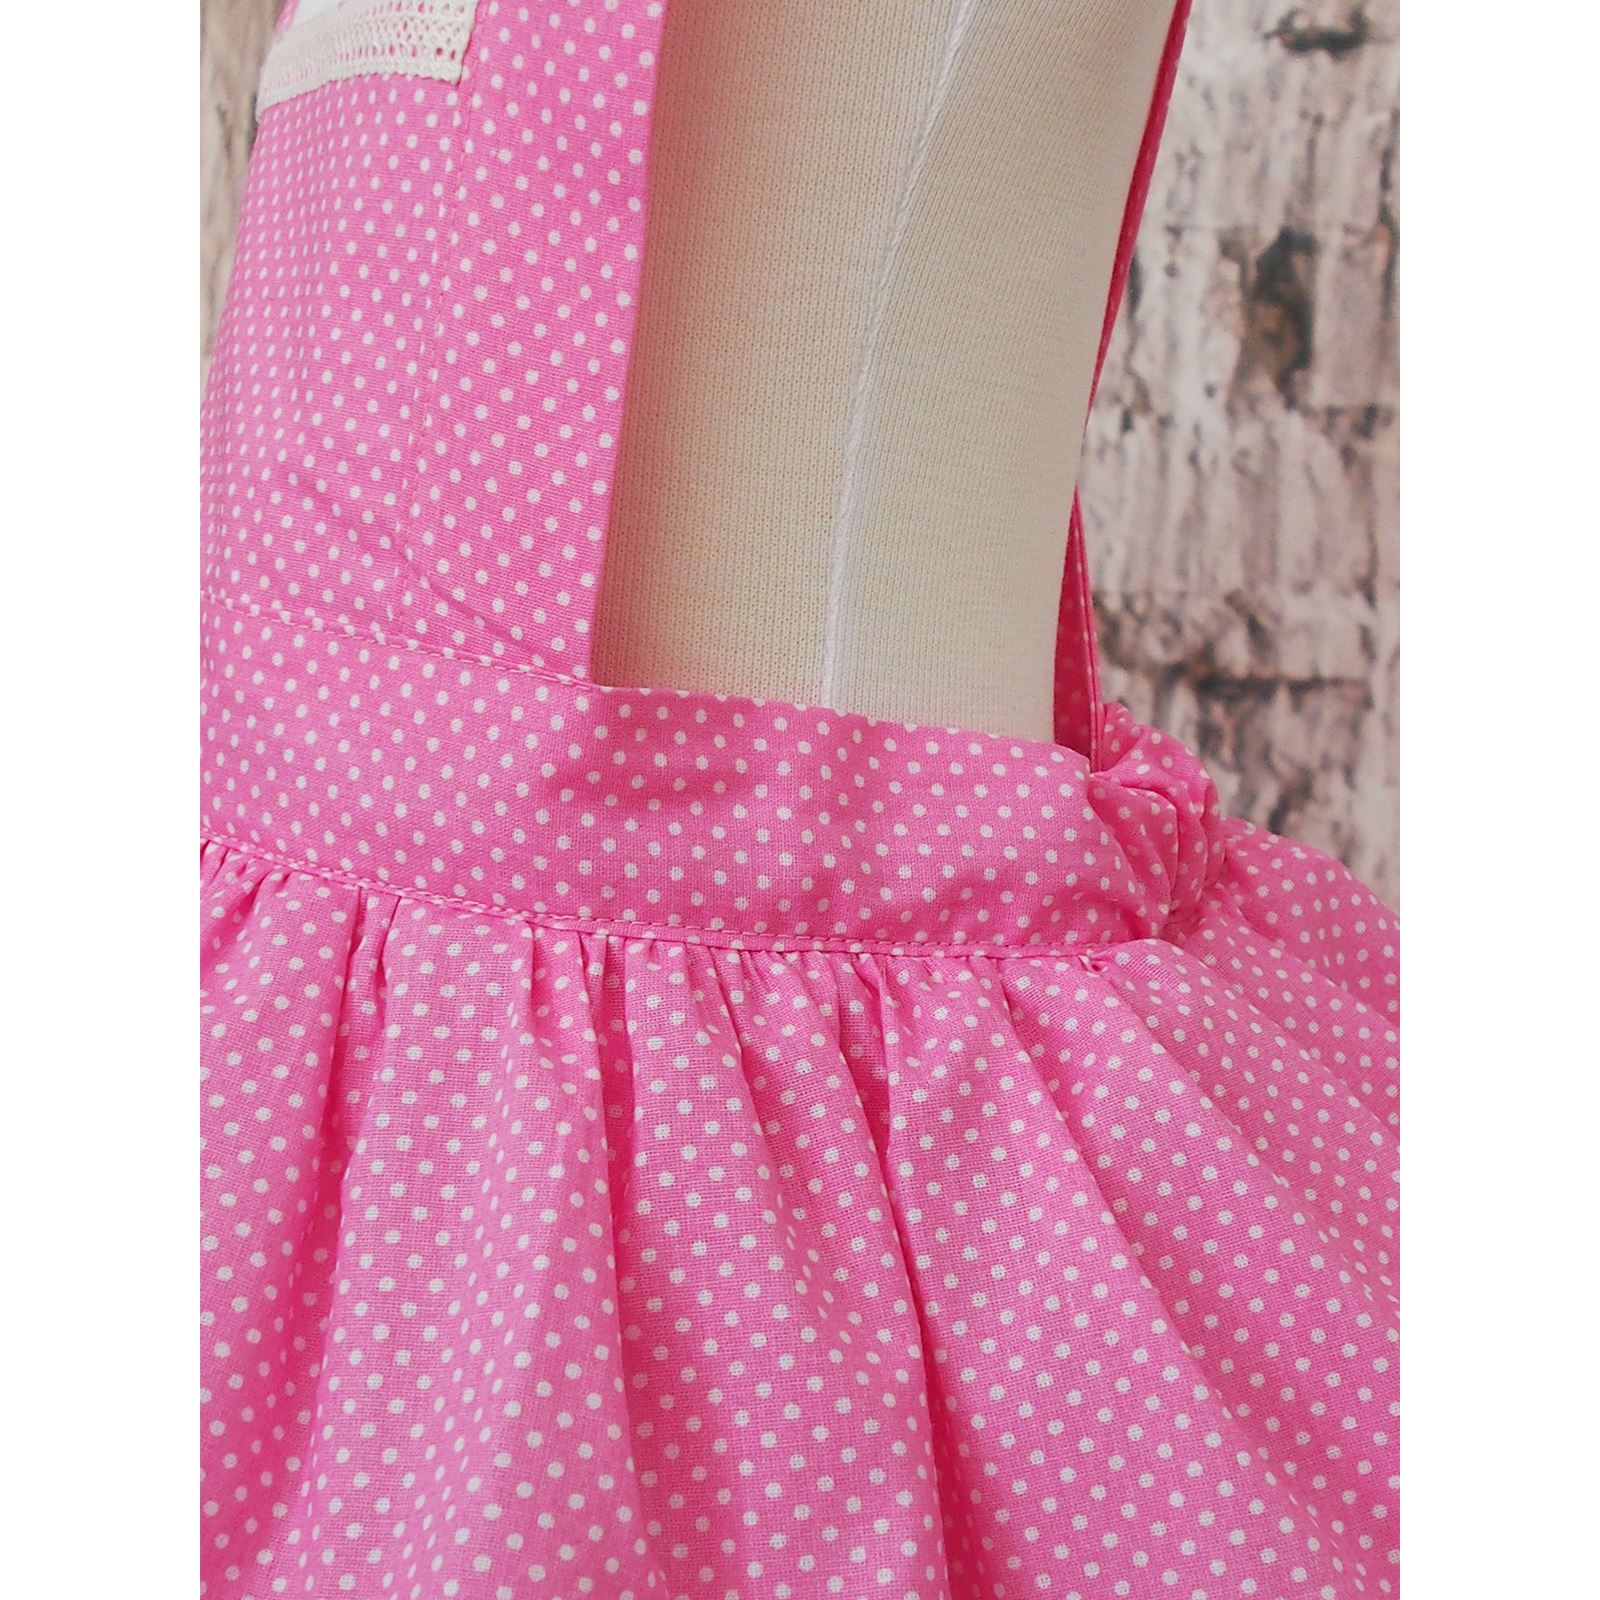 Puantiyeli Kız Çocuk Tütü Elbise Bandana Takım 1-5 Yaş Pembe